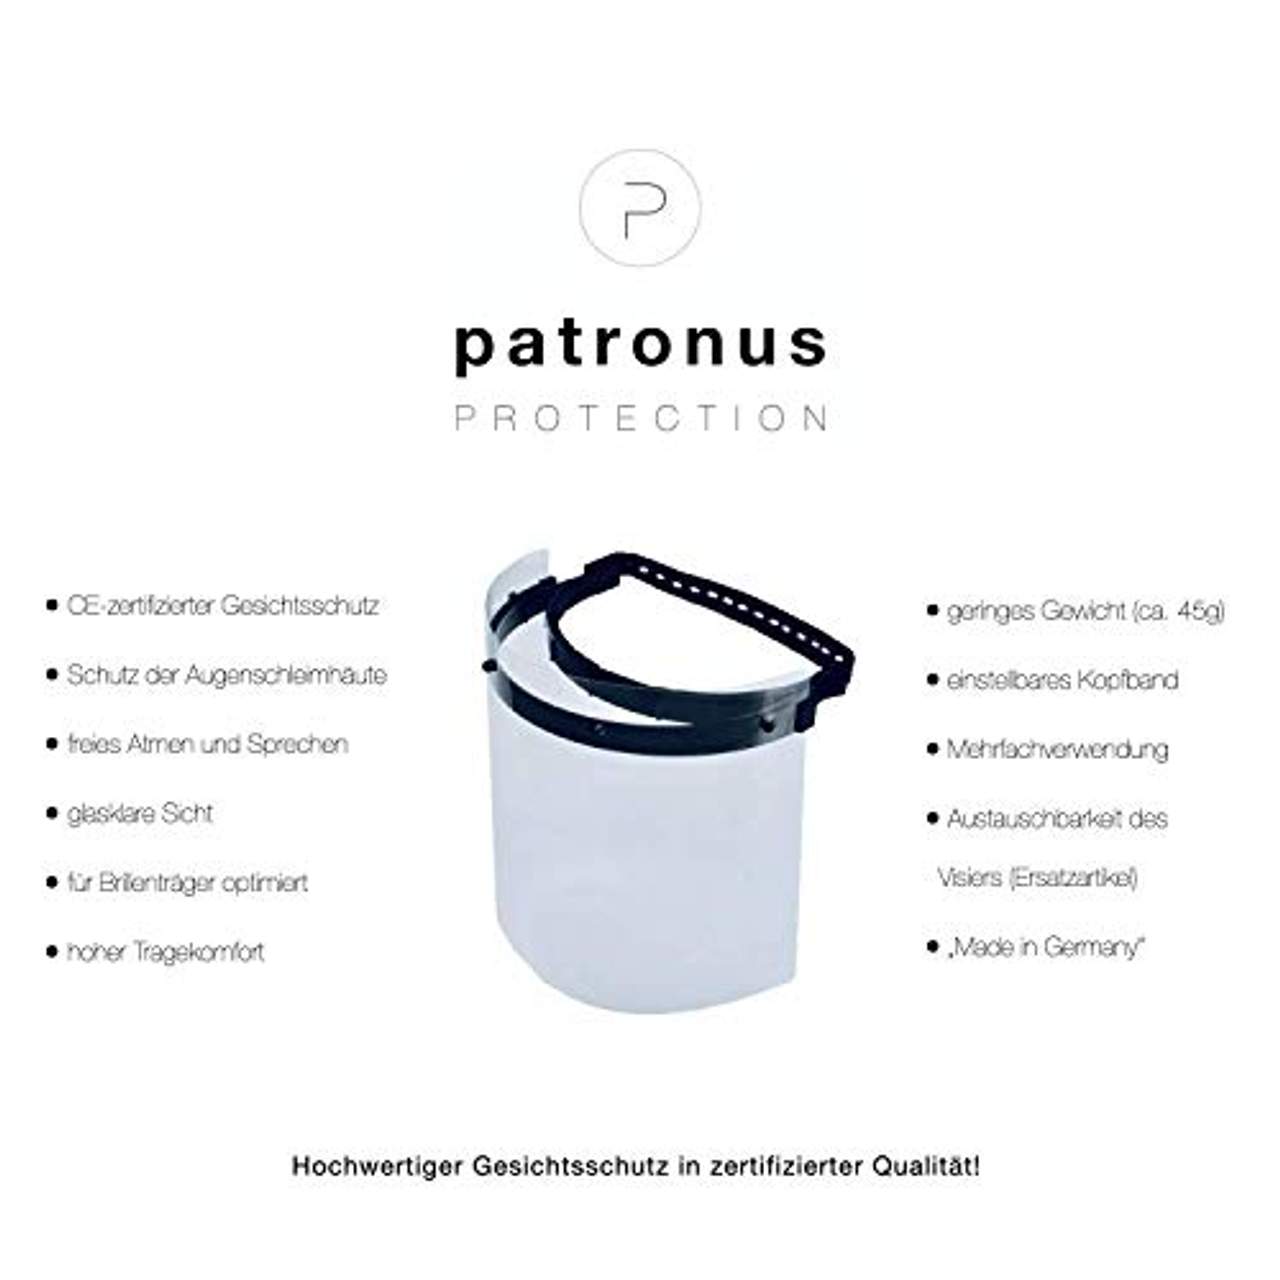 PATRONUS PROTECTION CE-zertifizierter Gesichtsschutz und Augenschutz